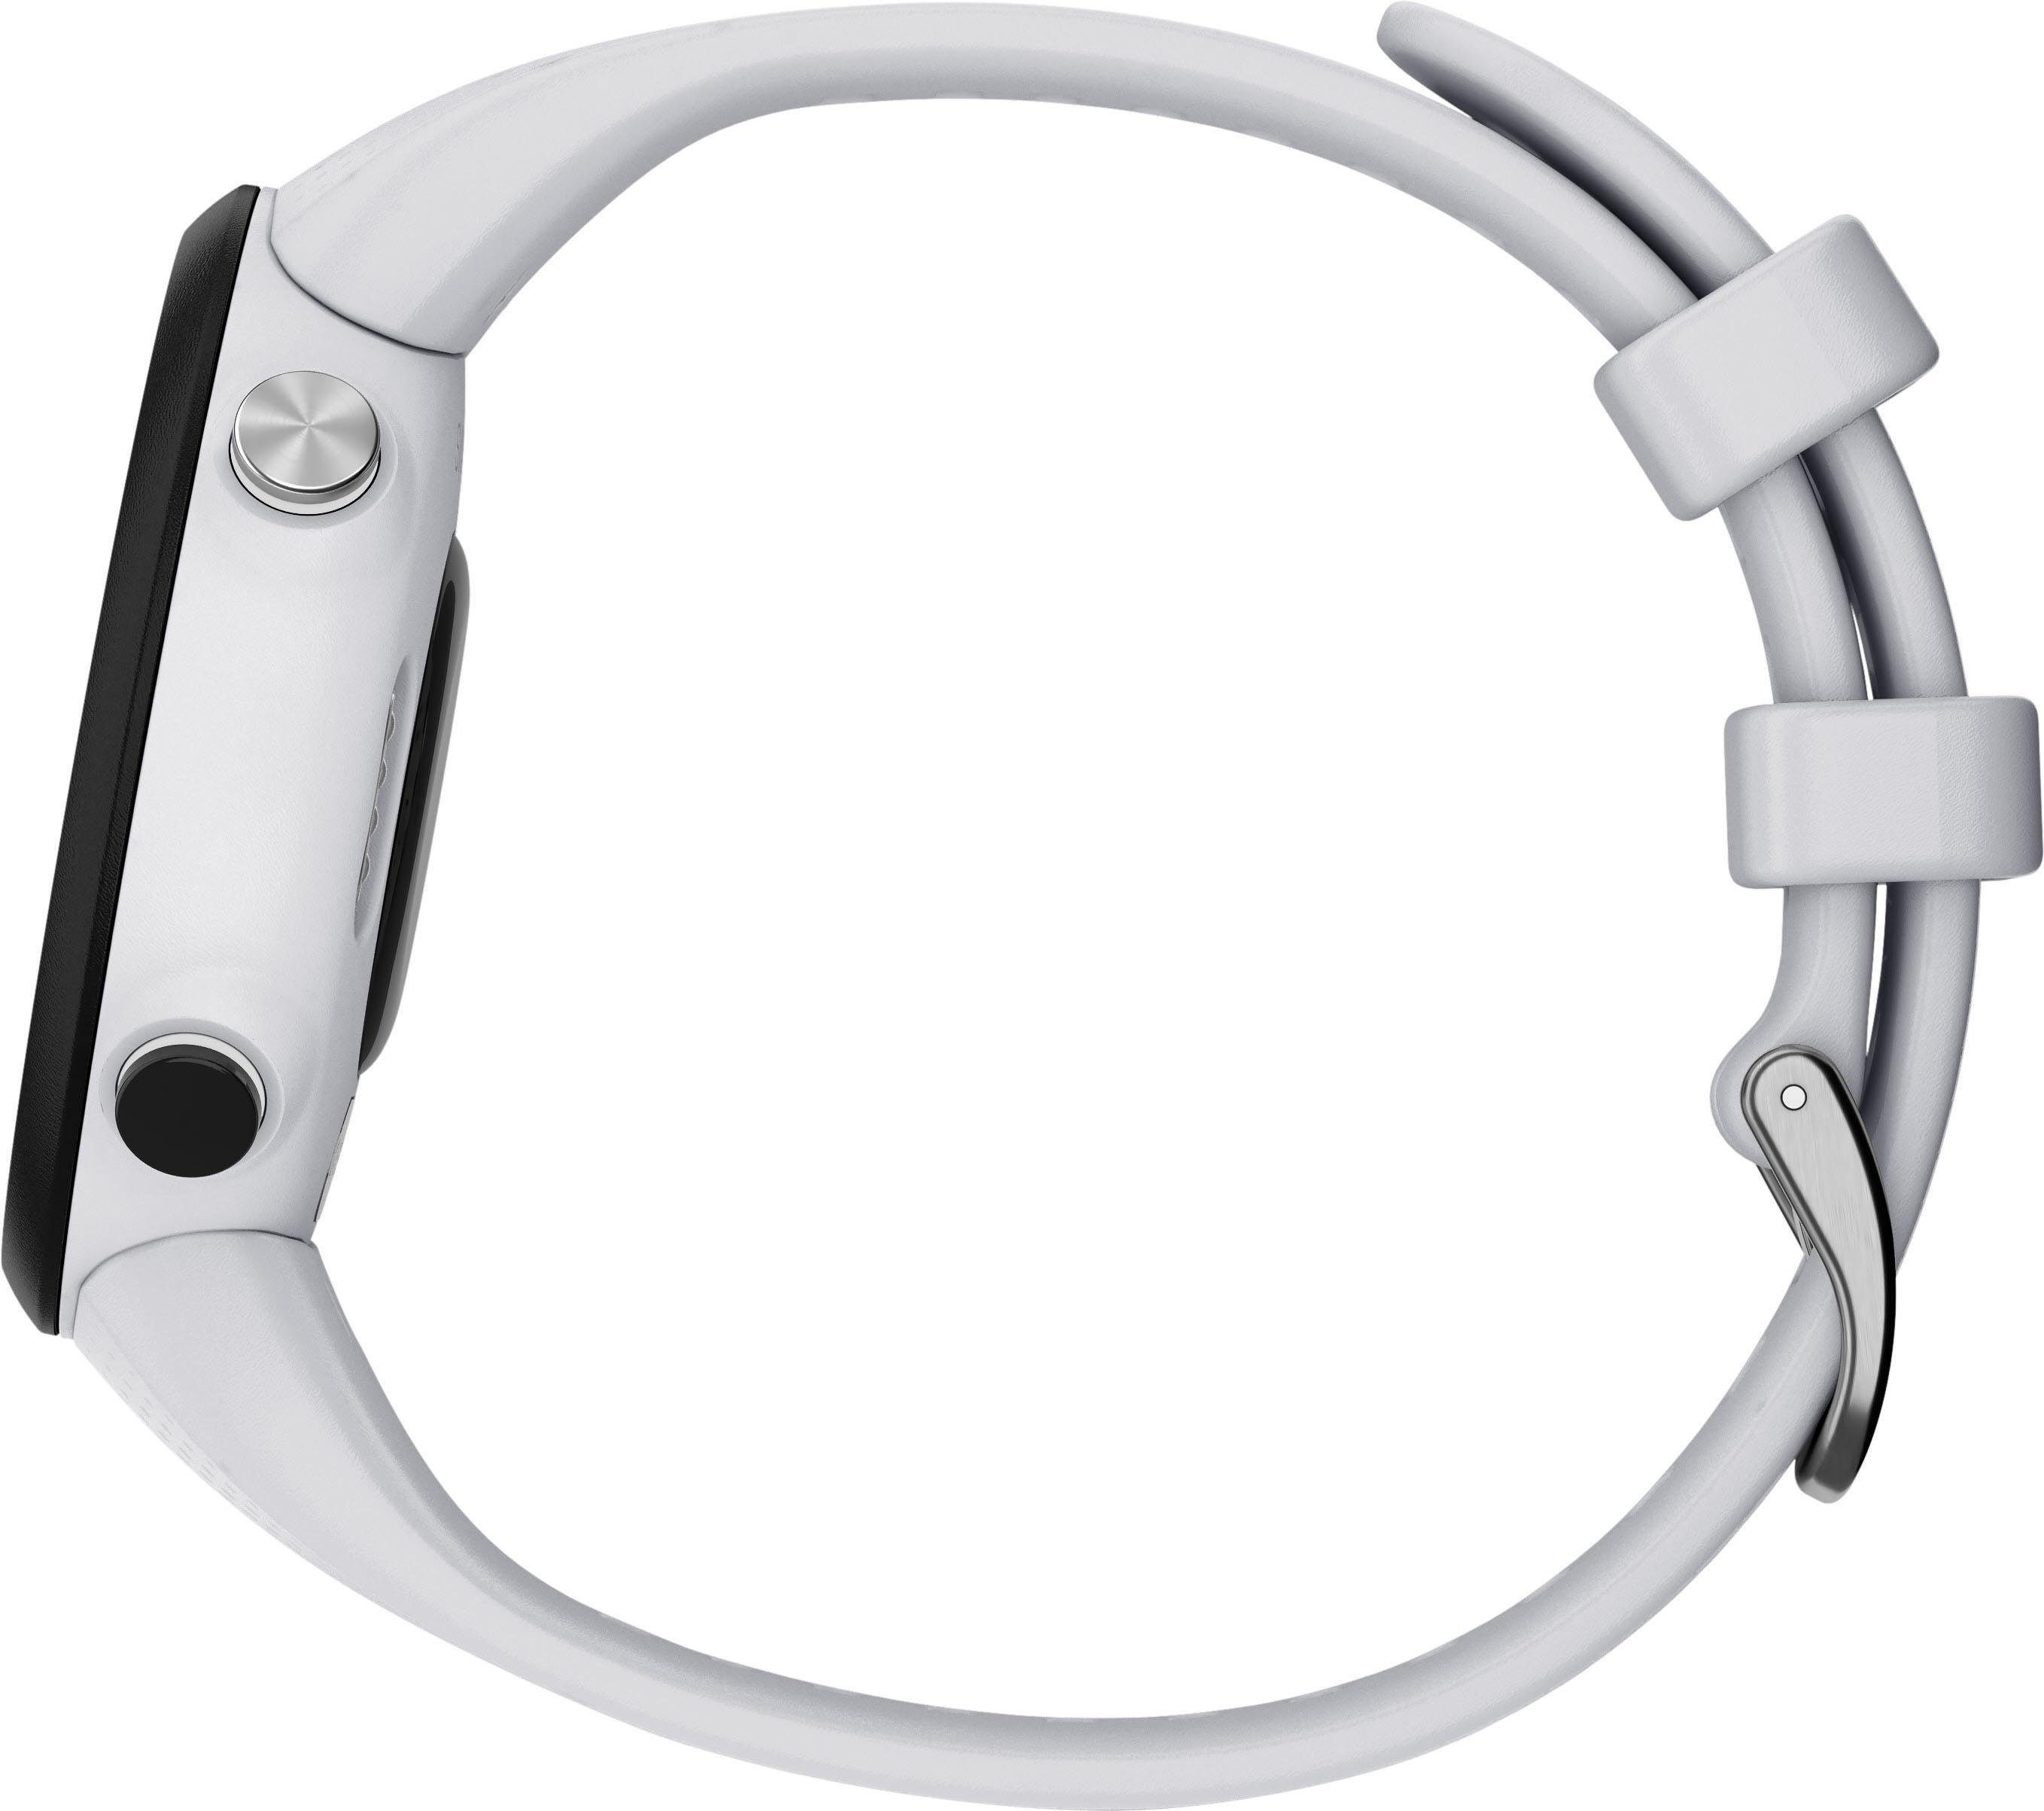 Swim2 mit Garmin (2,63 Smartwatch Silikon-Armband cm/1,04 Zoll) 20 mm weiß